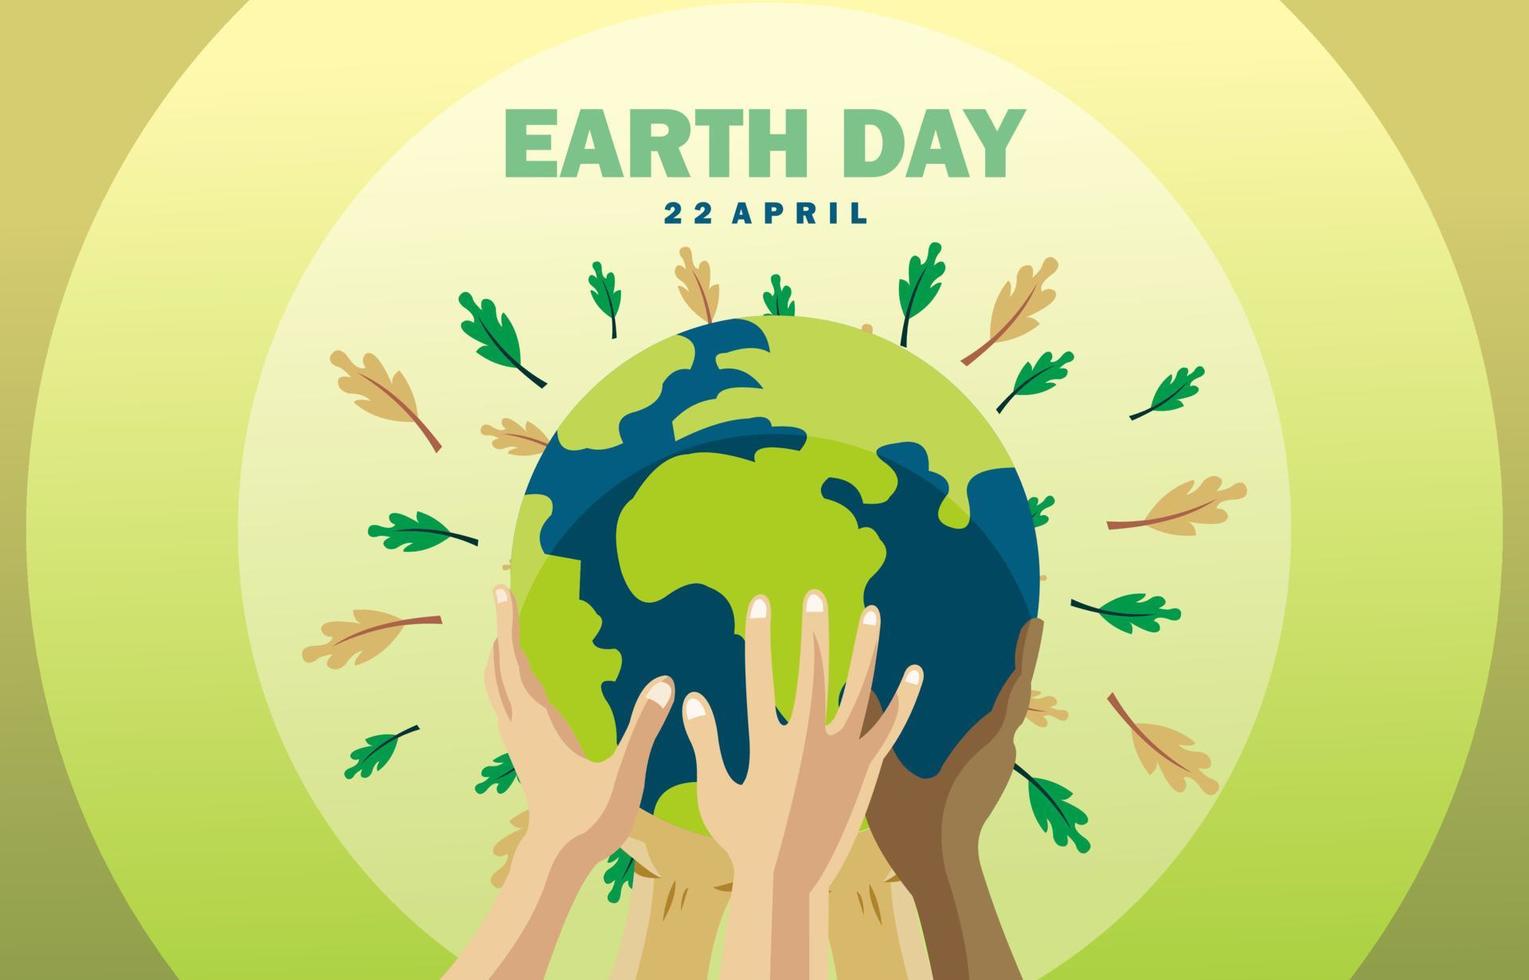 Erde Tag Poster, zuerst Tag, Mutter Erde, Natur, Bäume, mit das Design von ein Sammlung von Hände von verschiedene Ethnien halten das Erde oben vektor